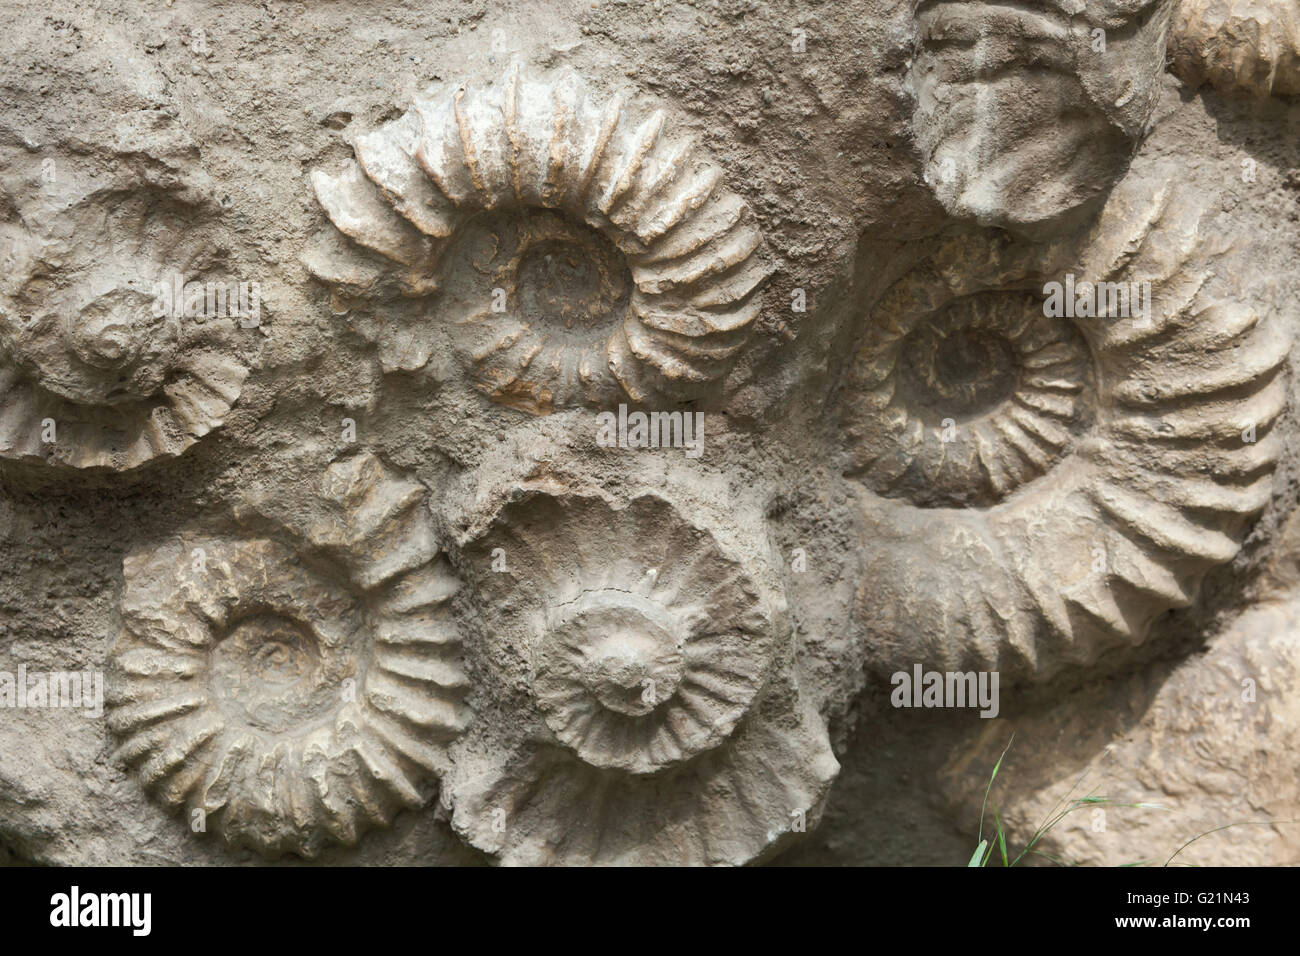 Scaphites dalla famiglia di heteromorph ammonites diffuso durante il Cretacico trovato come fossili in Marocco, Nord Af Foto Stock